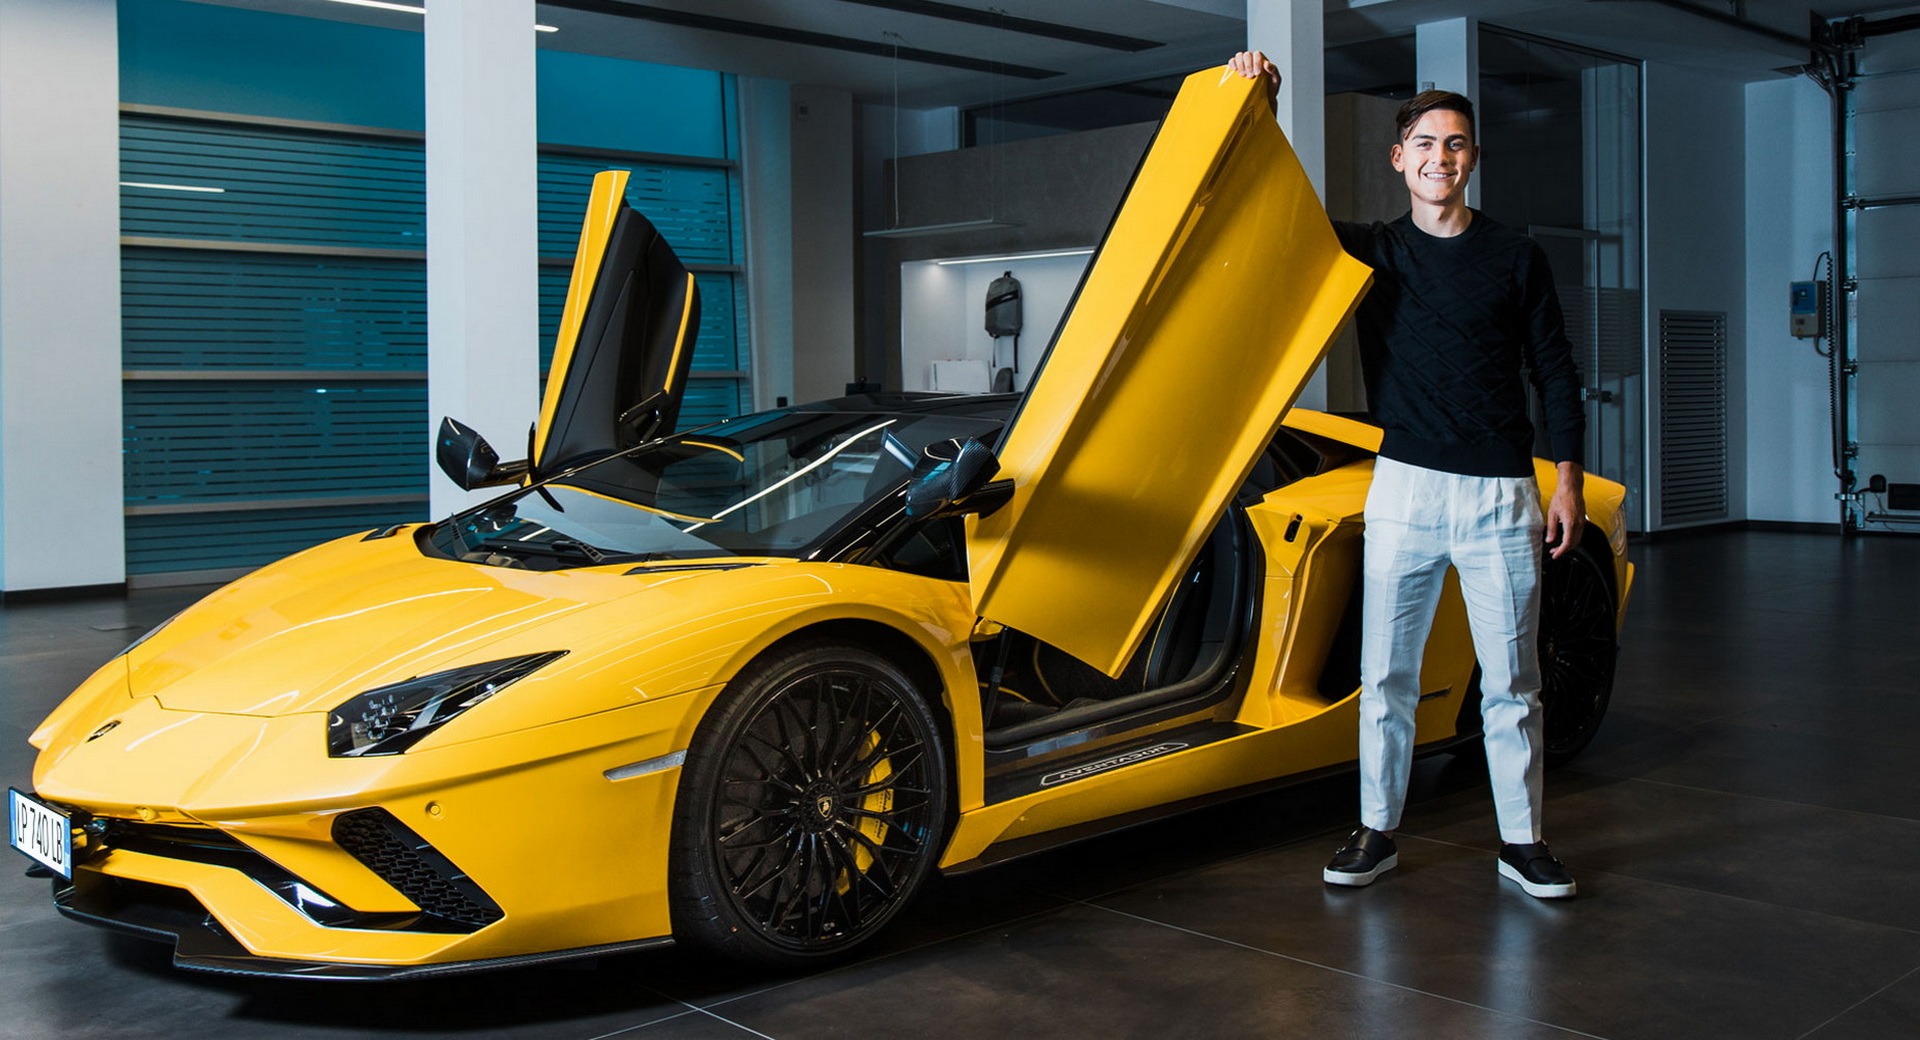 Ăn mừng bàn thắng thứ 100, Paulo Dybala mua Lamborghini Aventador S Roadster giá quy đổi hơn 10 tỷ đồng - Ảnh 1.